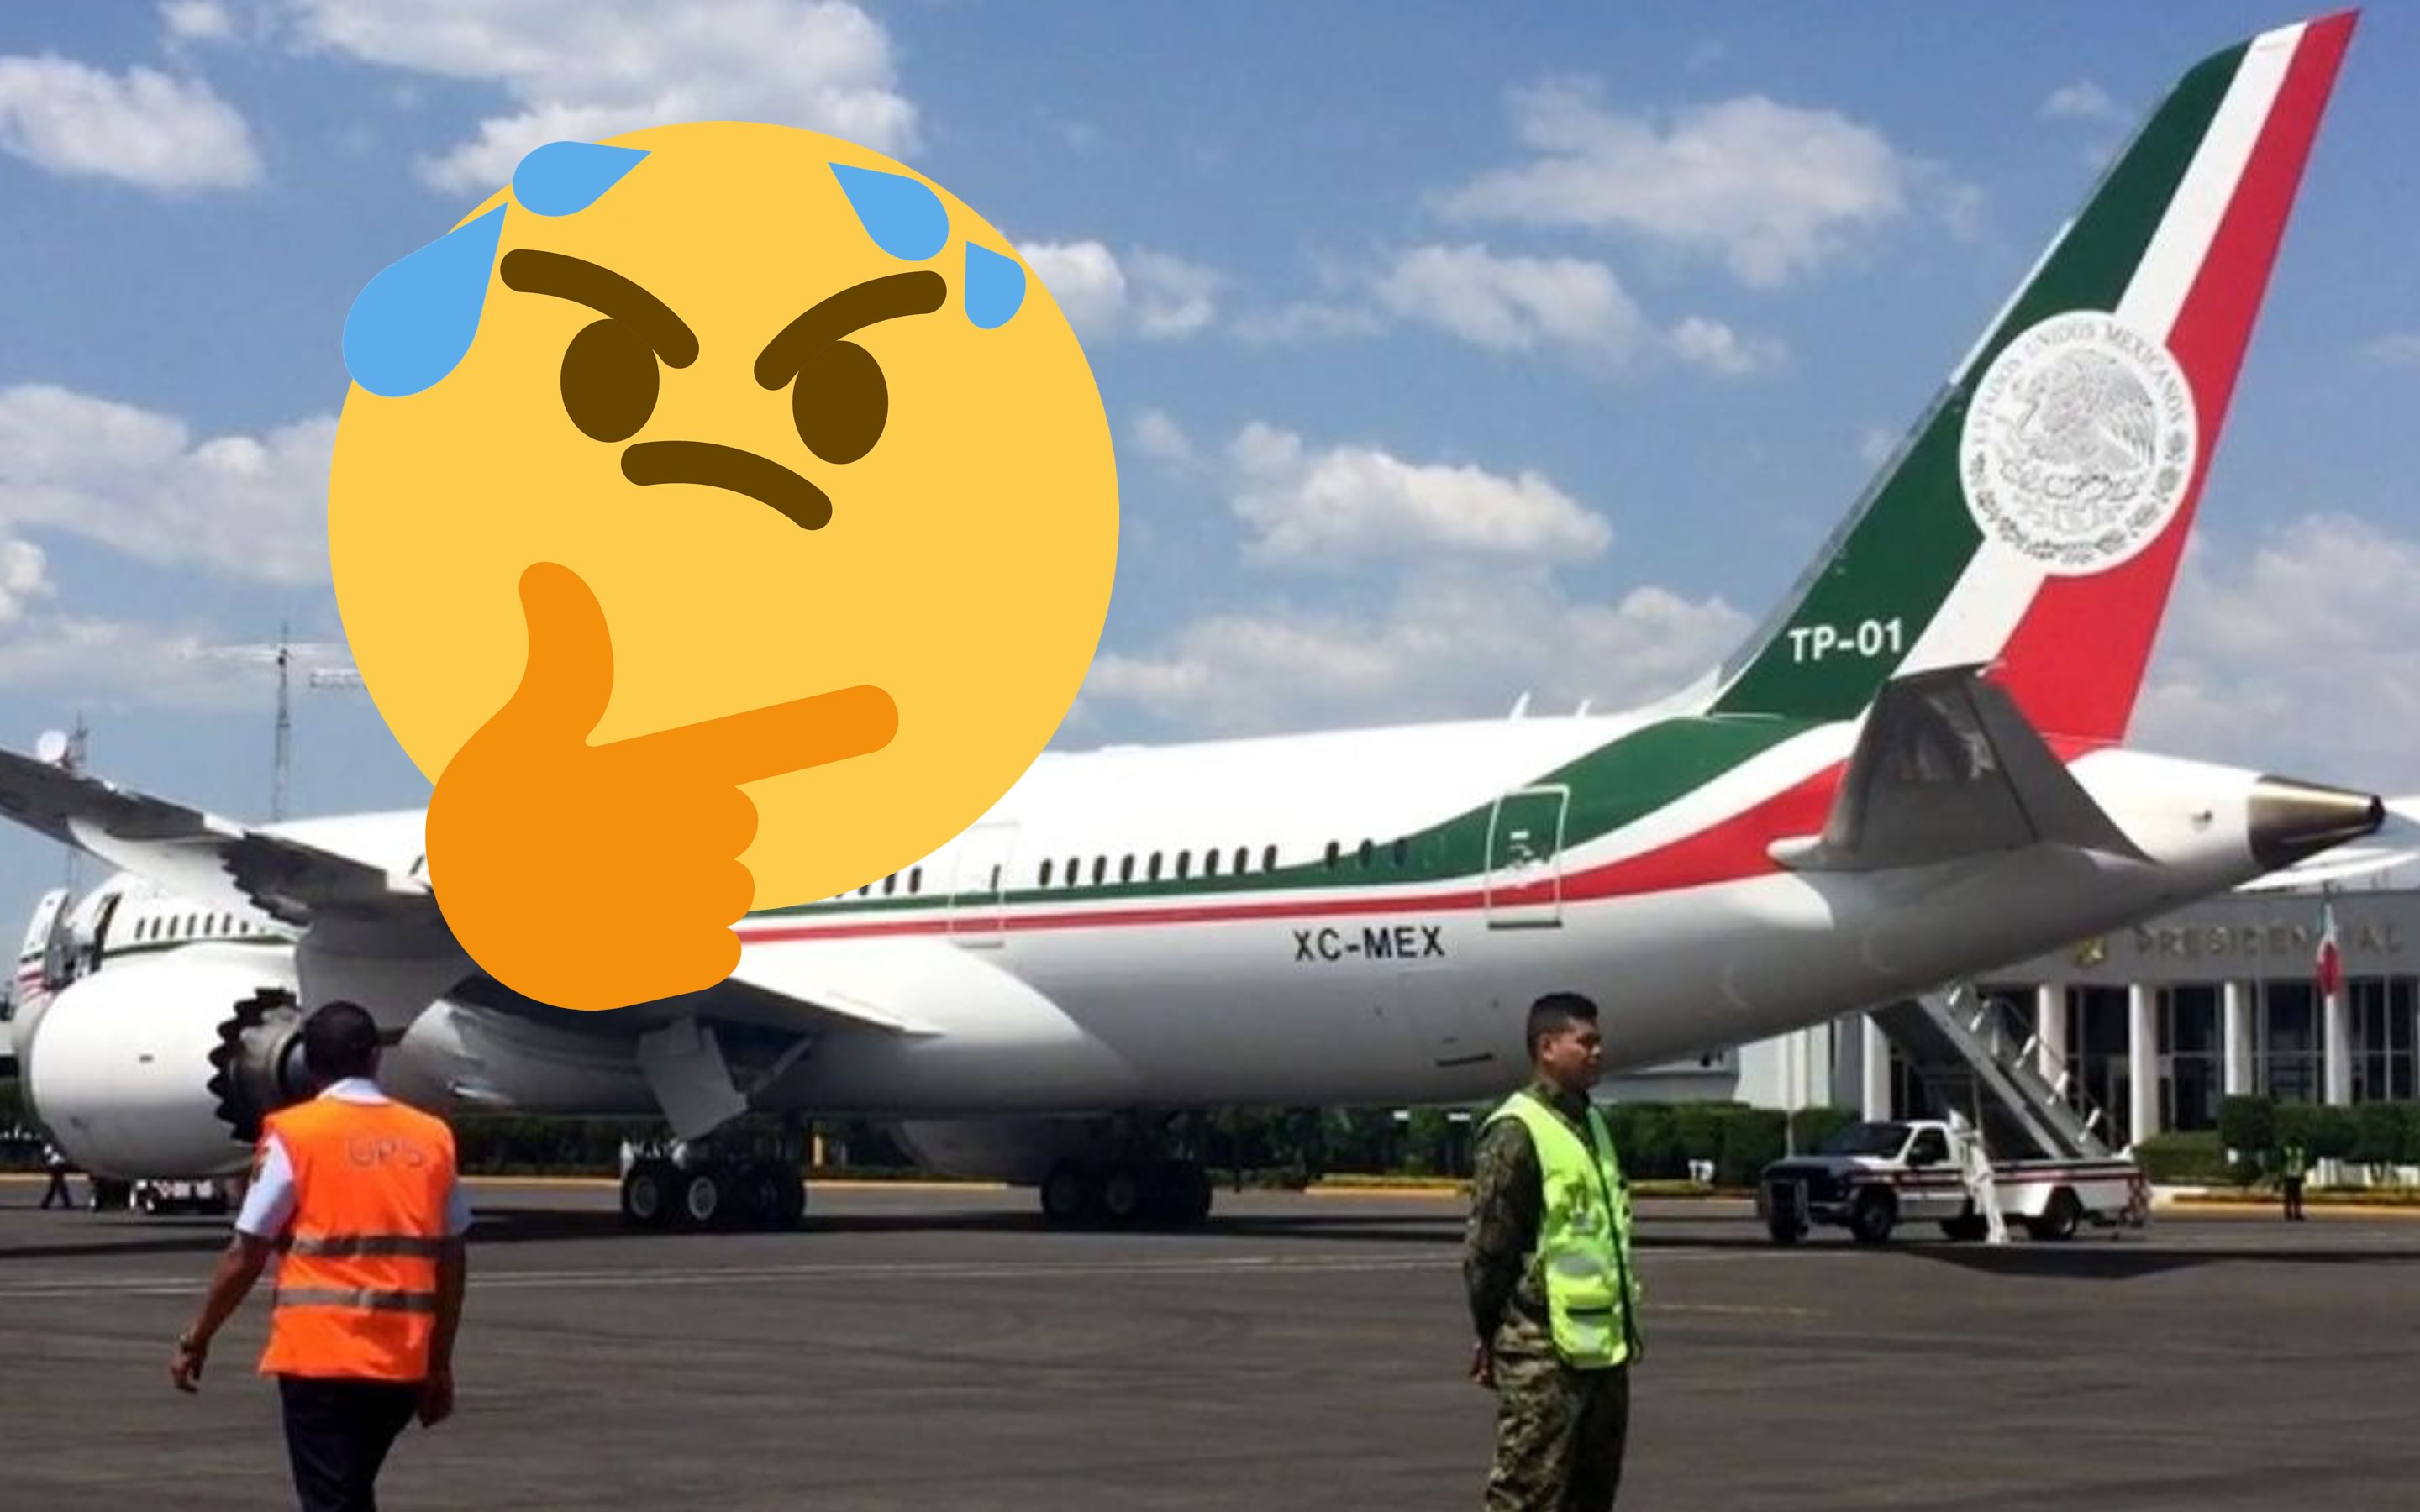 AMLO mexico avion presidencial Jose Maria Morelos y Pavon